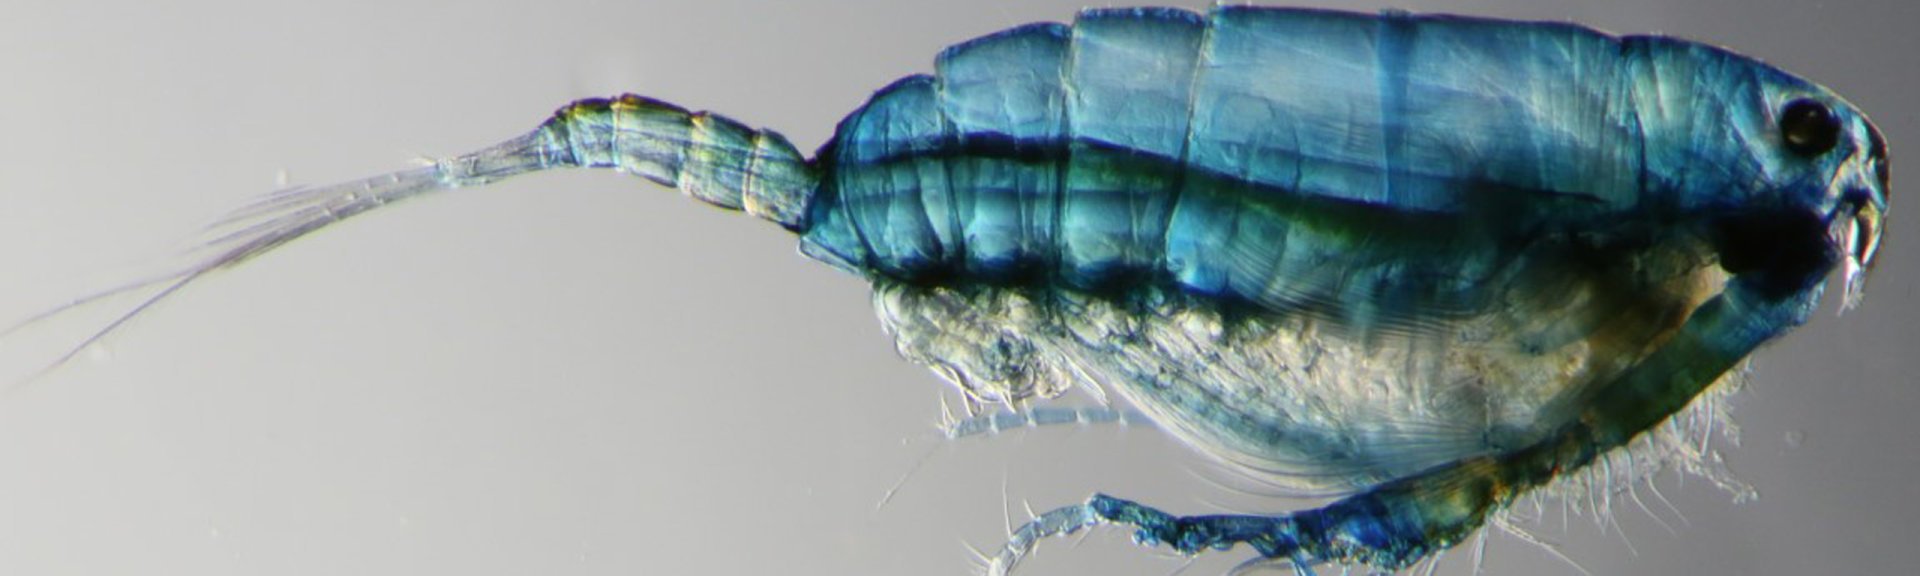 Zooplankton copepod. Photo by Julian Uribe-Palomino